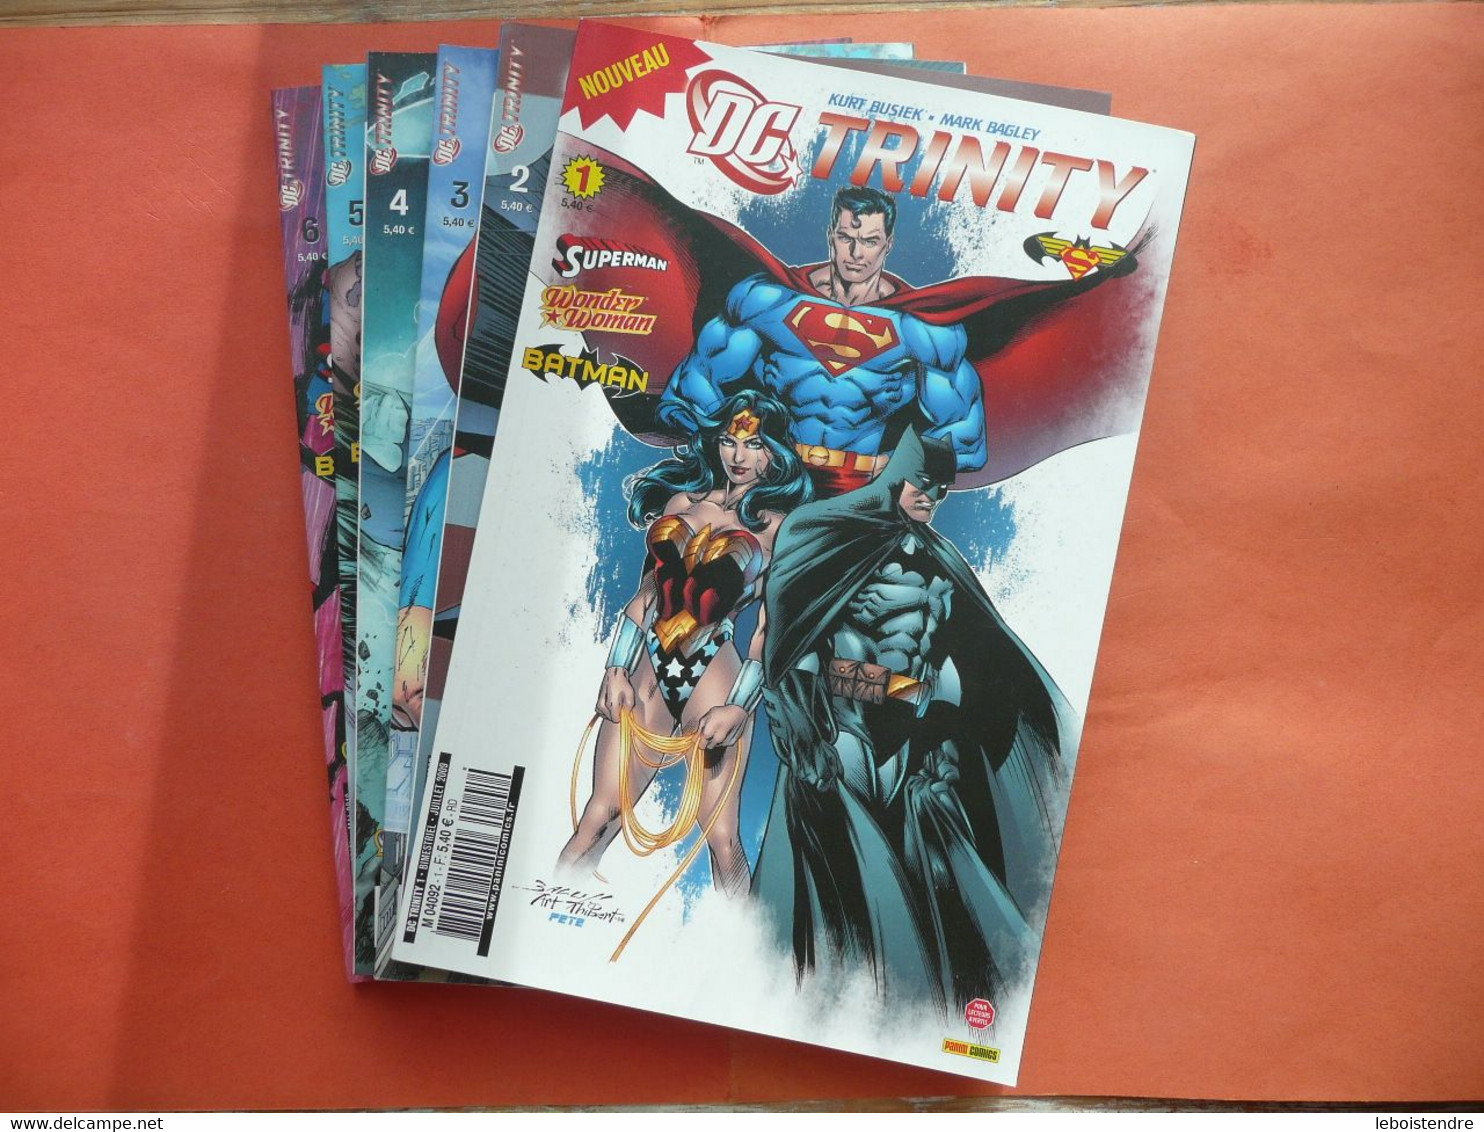 DC TRINITY N 1 2 3 4 5 6 JUILLET 2009 A MAI 2010 MANQUE N 7 POUR FAIRE SERIE COMPLETE PANINI COMICS SUPERMAN BATMAN - Bücherpakete